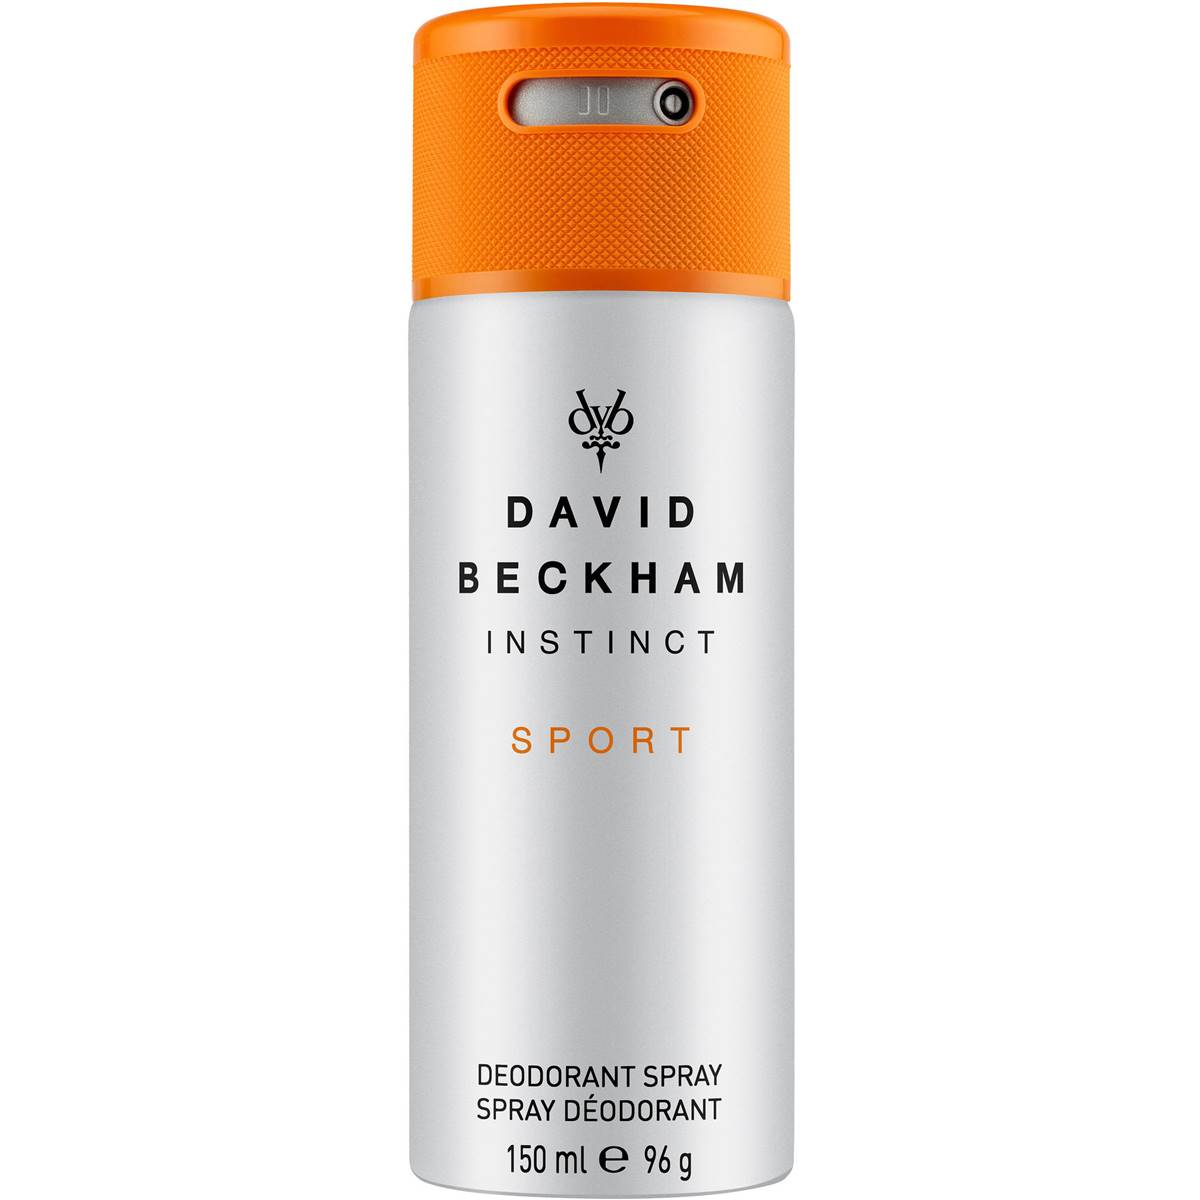 Beckham Body Spray Instinct Sport 150ml